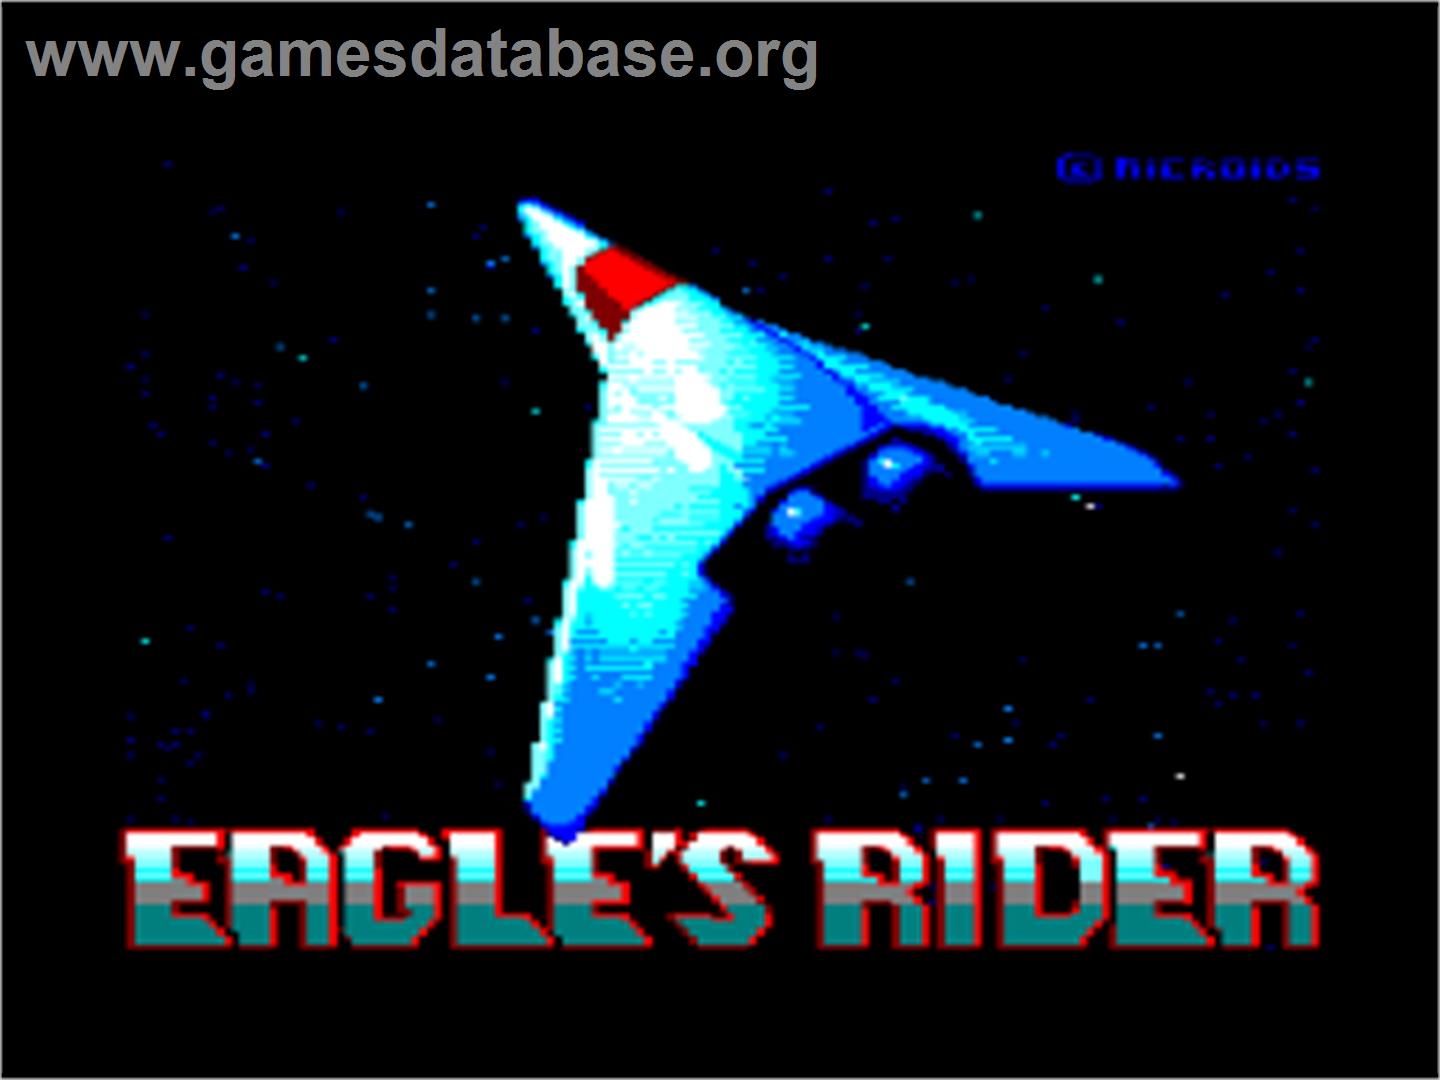 Eagle's Rider - Amstrad CPC - Artwork - Title Screen